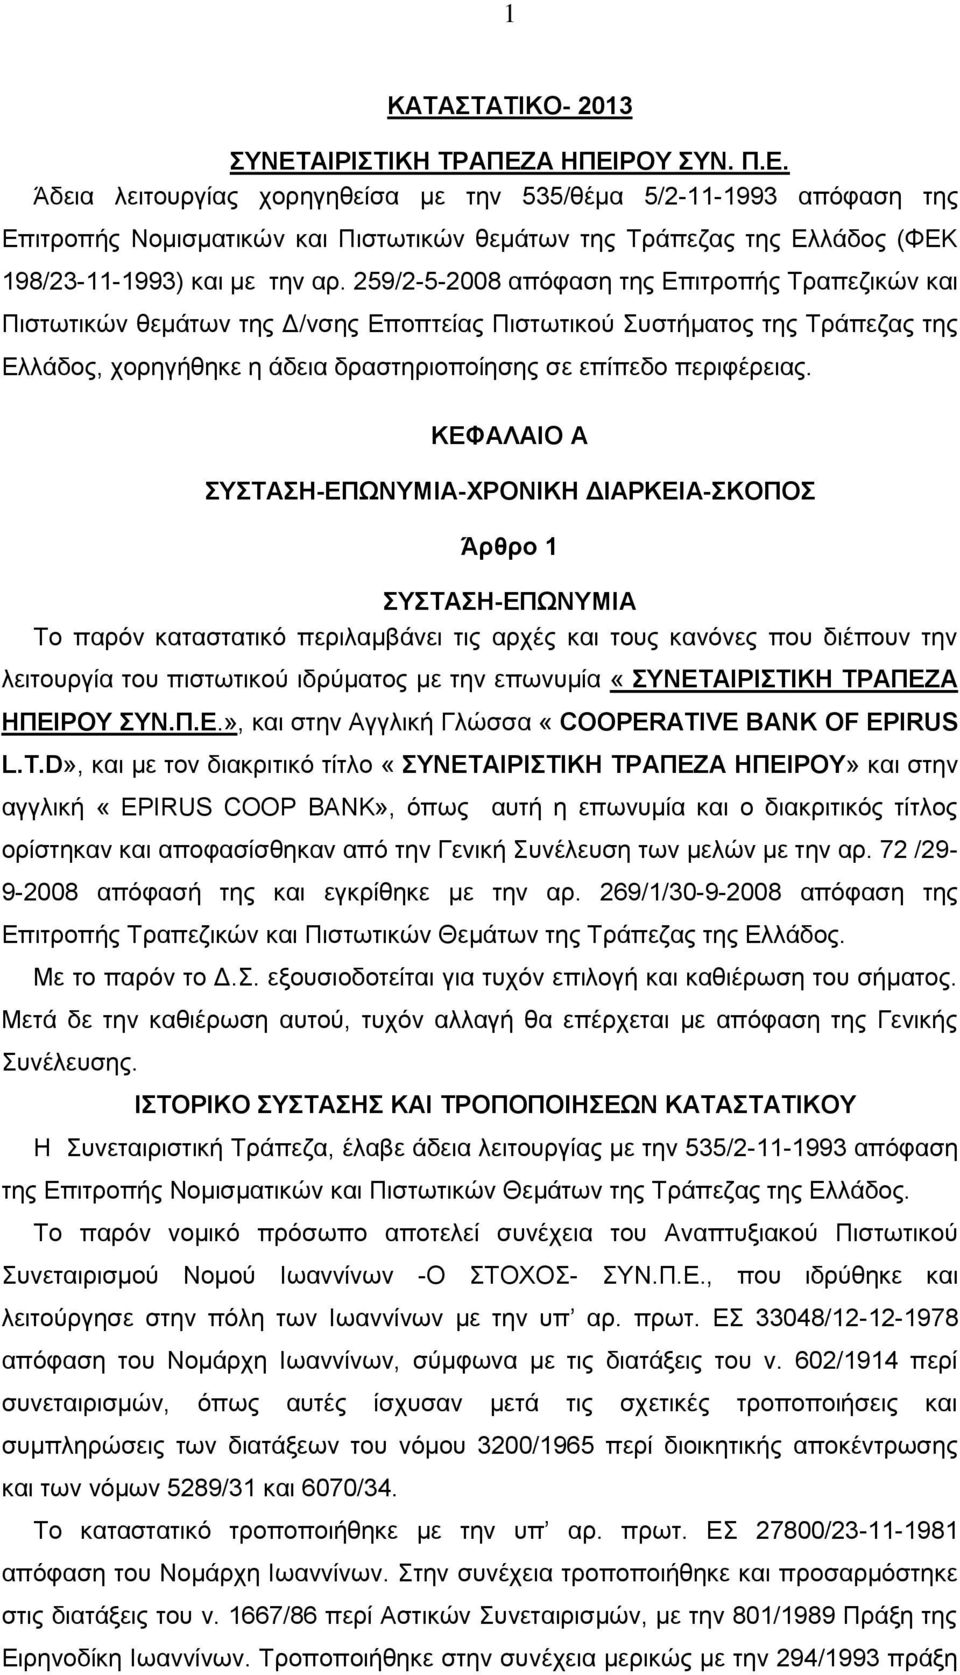 259/2-5-2008 απόφαση της Επιτροπής Τραπεζικών και Πιστωτικών θεμάτων της Δ/νσης Εποπτείας Πιστωτικού Συστήματος της Τράπεζας της Ελλάδος, χορηγήθηκε η άδεια δραστηριοποίησης σε επίπεδο περιφέρειας.